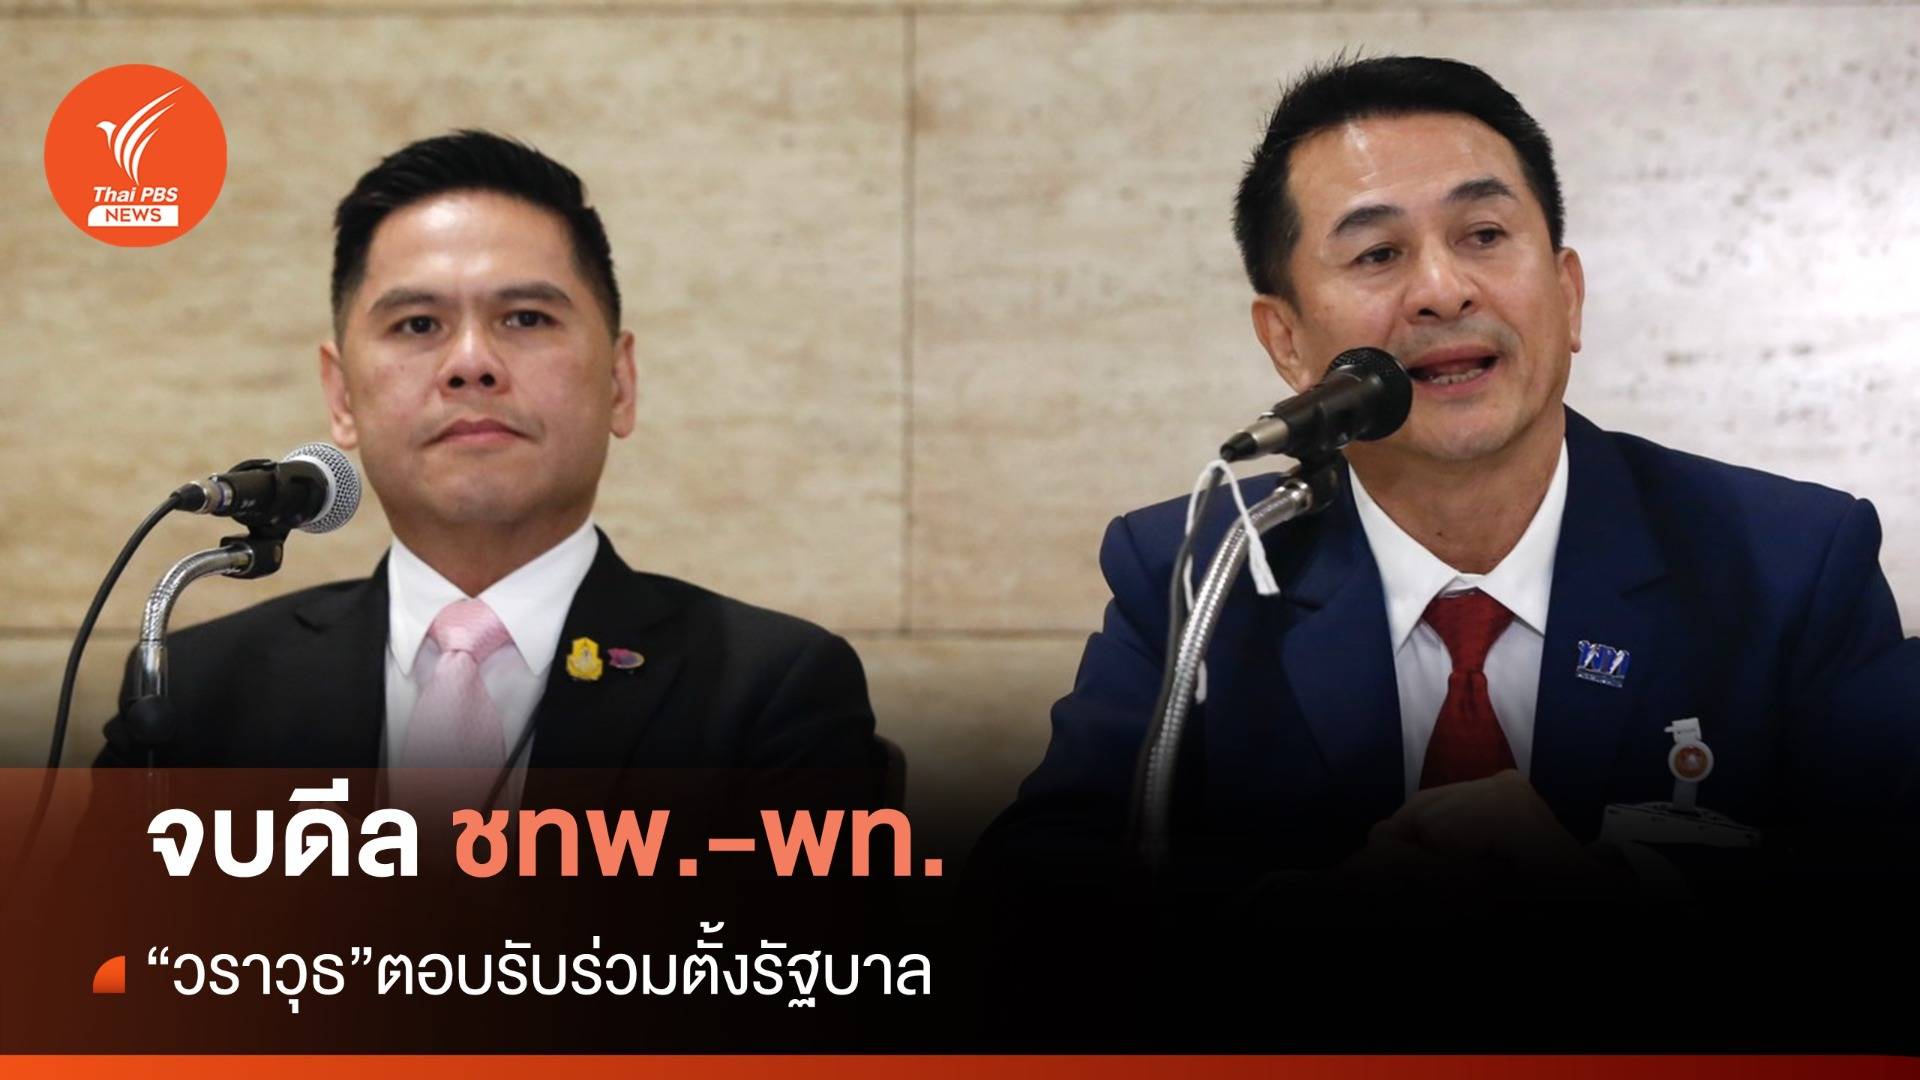 ดีลจบ! ชาติไทยพัฒนา-เพื่อไทย ร่วมตั้งรัฐบาล 238 เสียง 